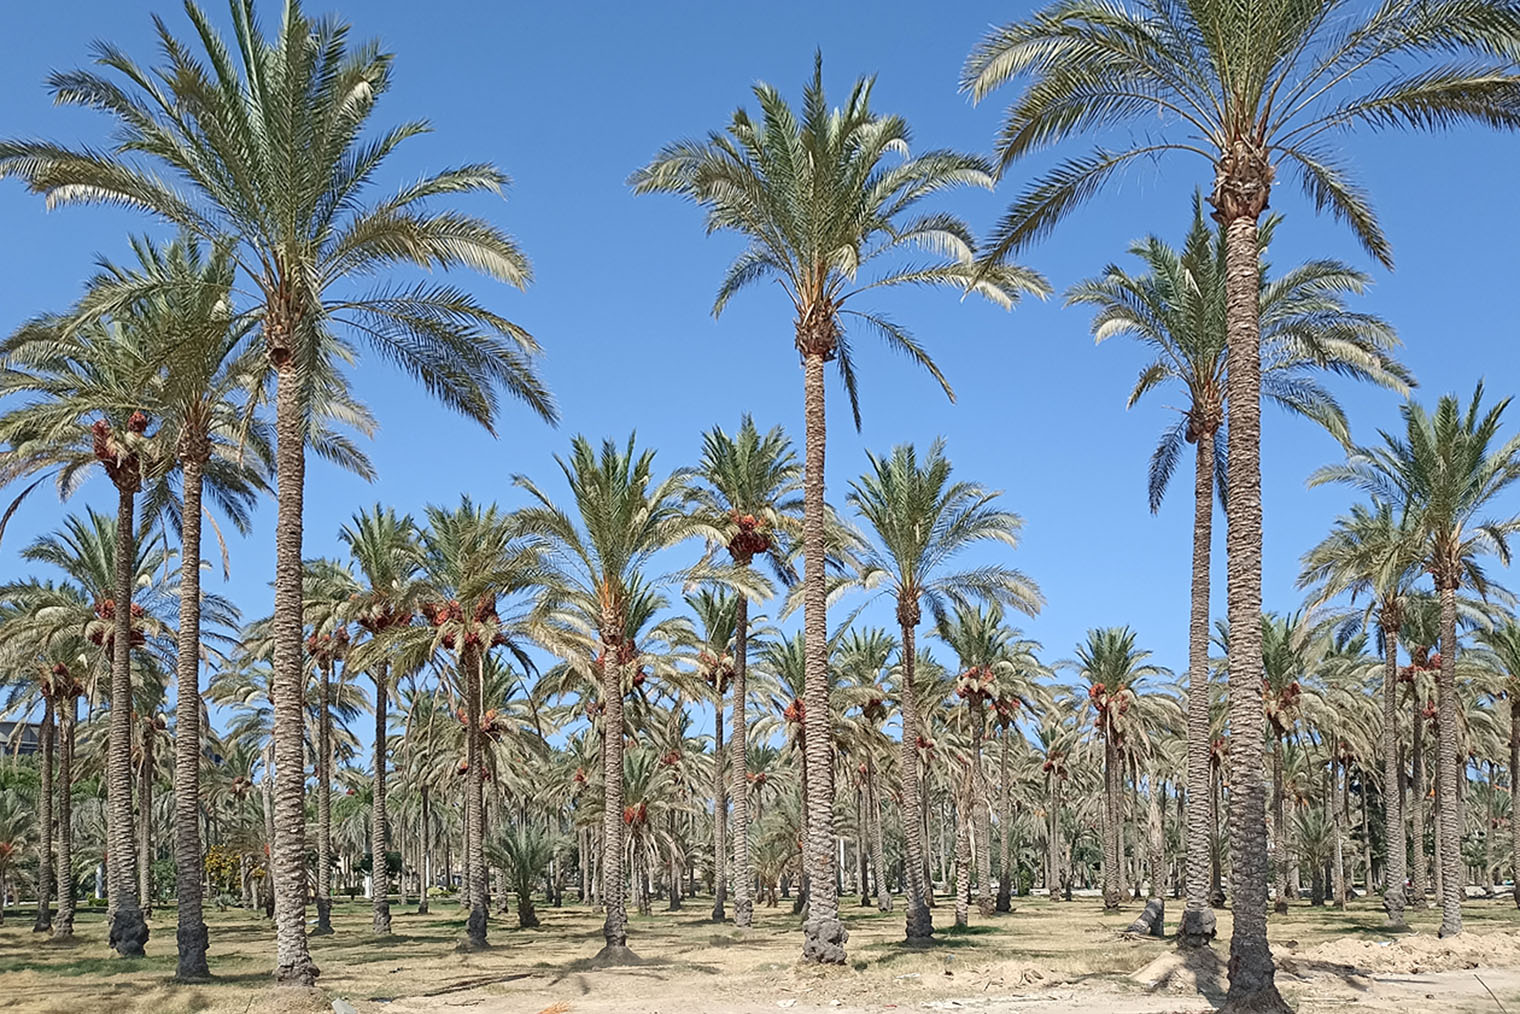 Несмотря на то что город находится в дельте Нила, в Александрии мало зелени. Поэтому пальмовый сад в парке напоминает оазис в пустыне